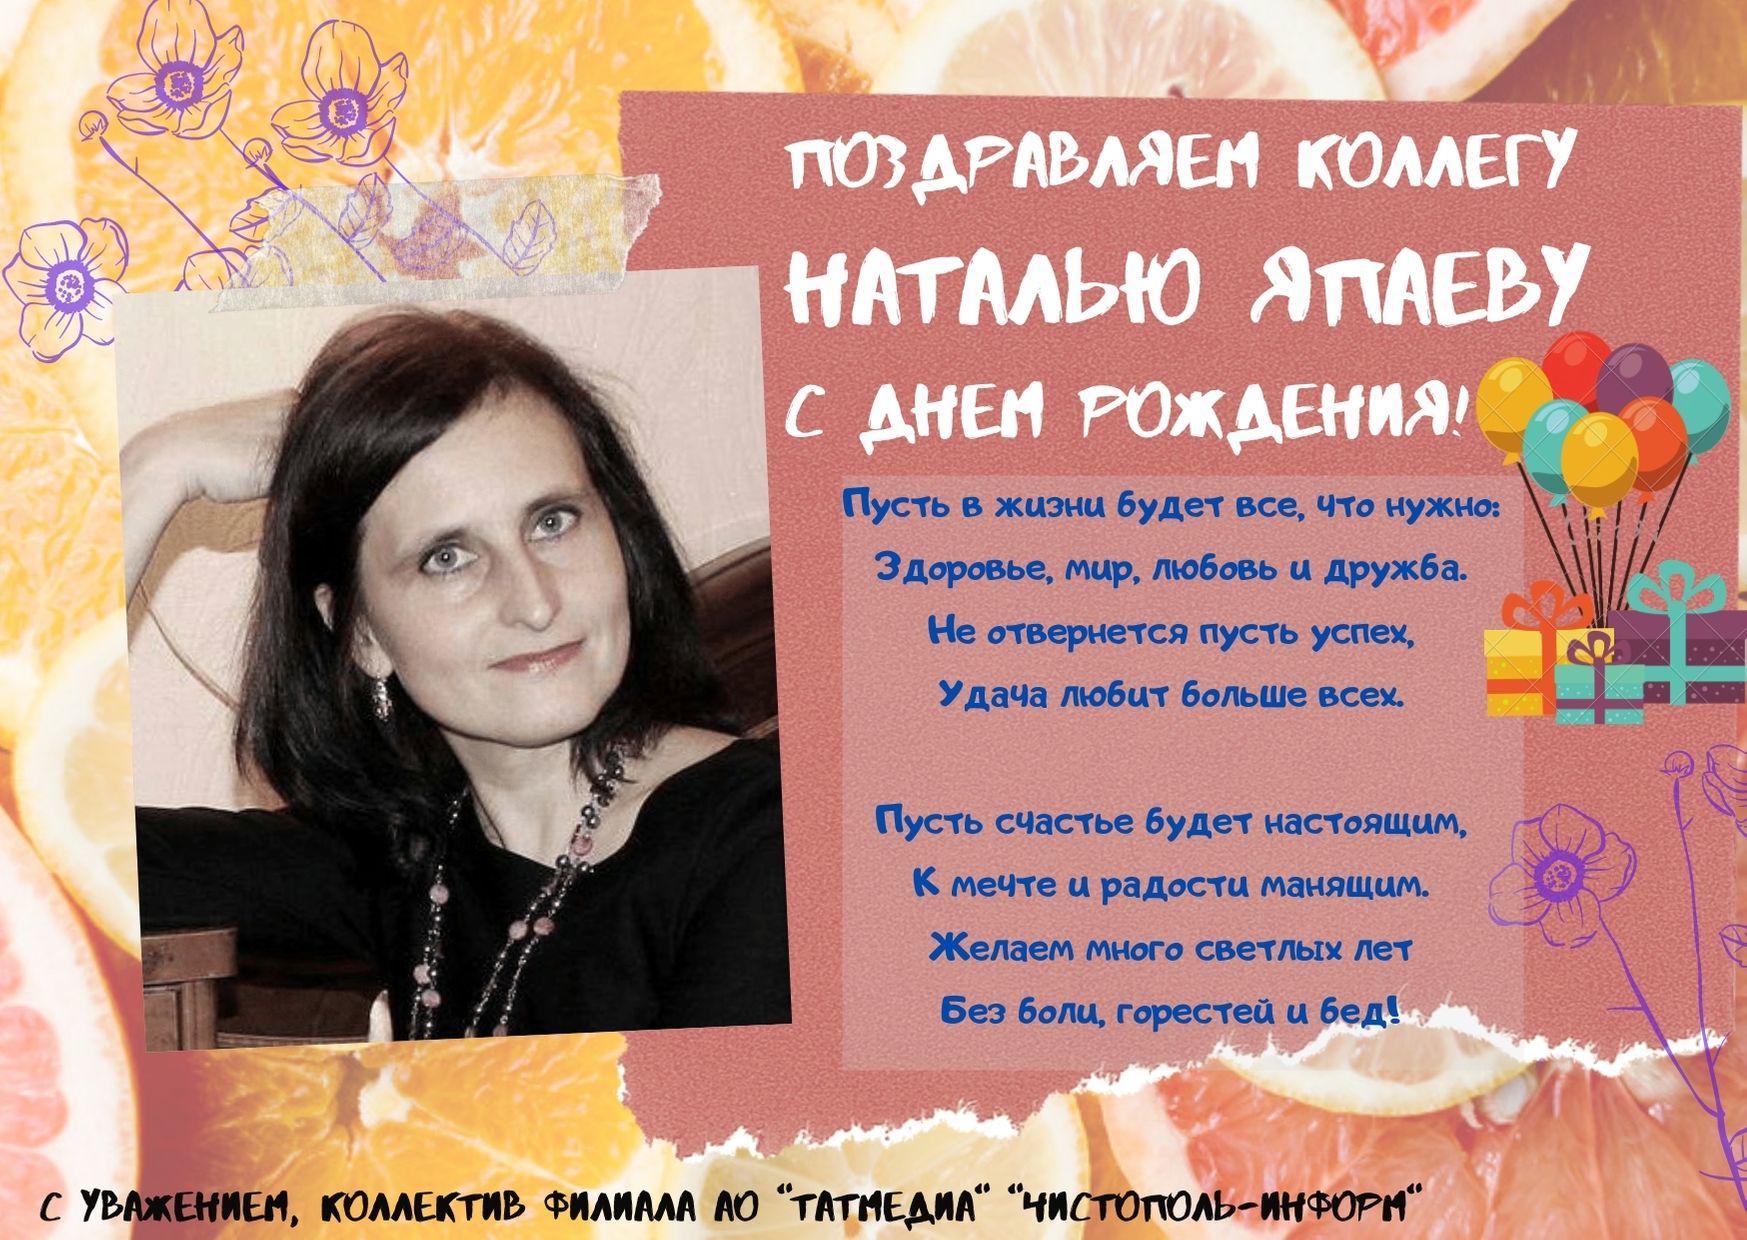 Поздравляем коллегу Наталью Япаеву с Днем рождения!